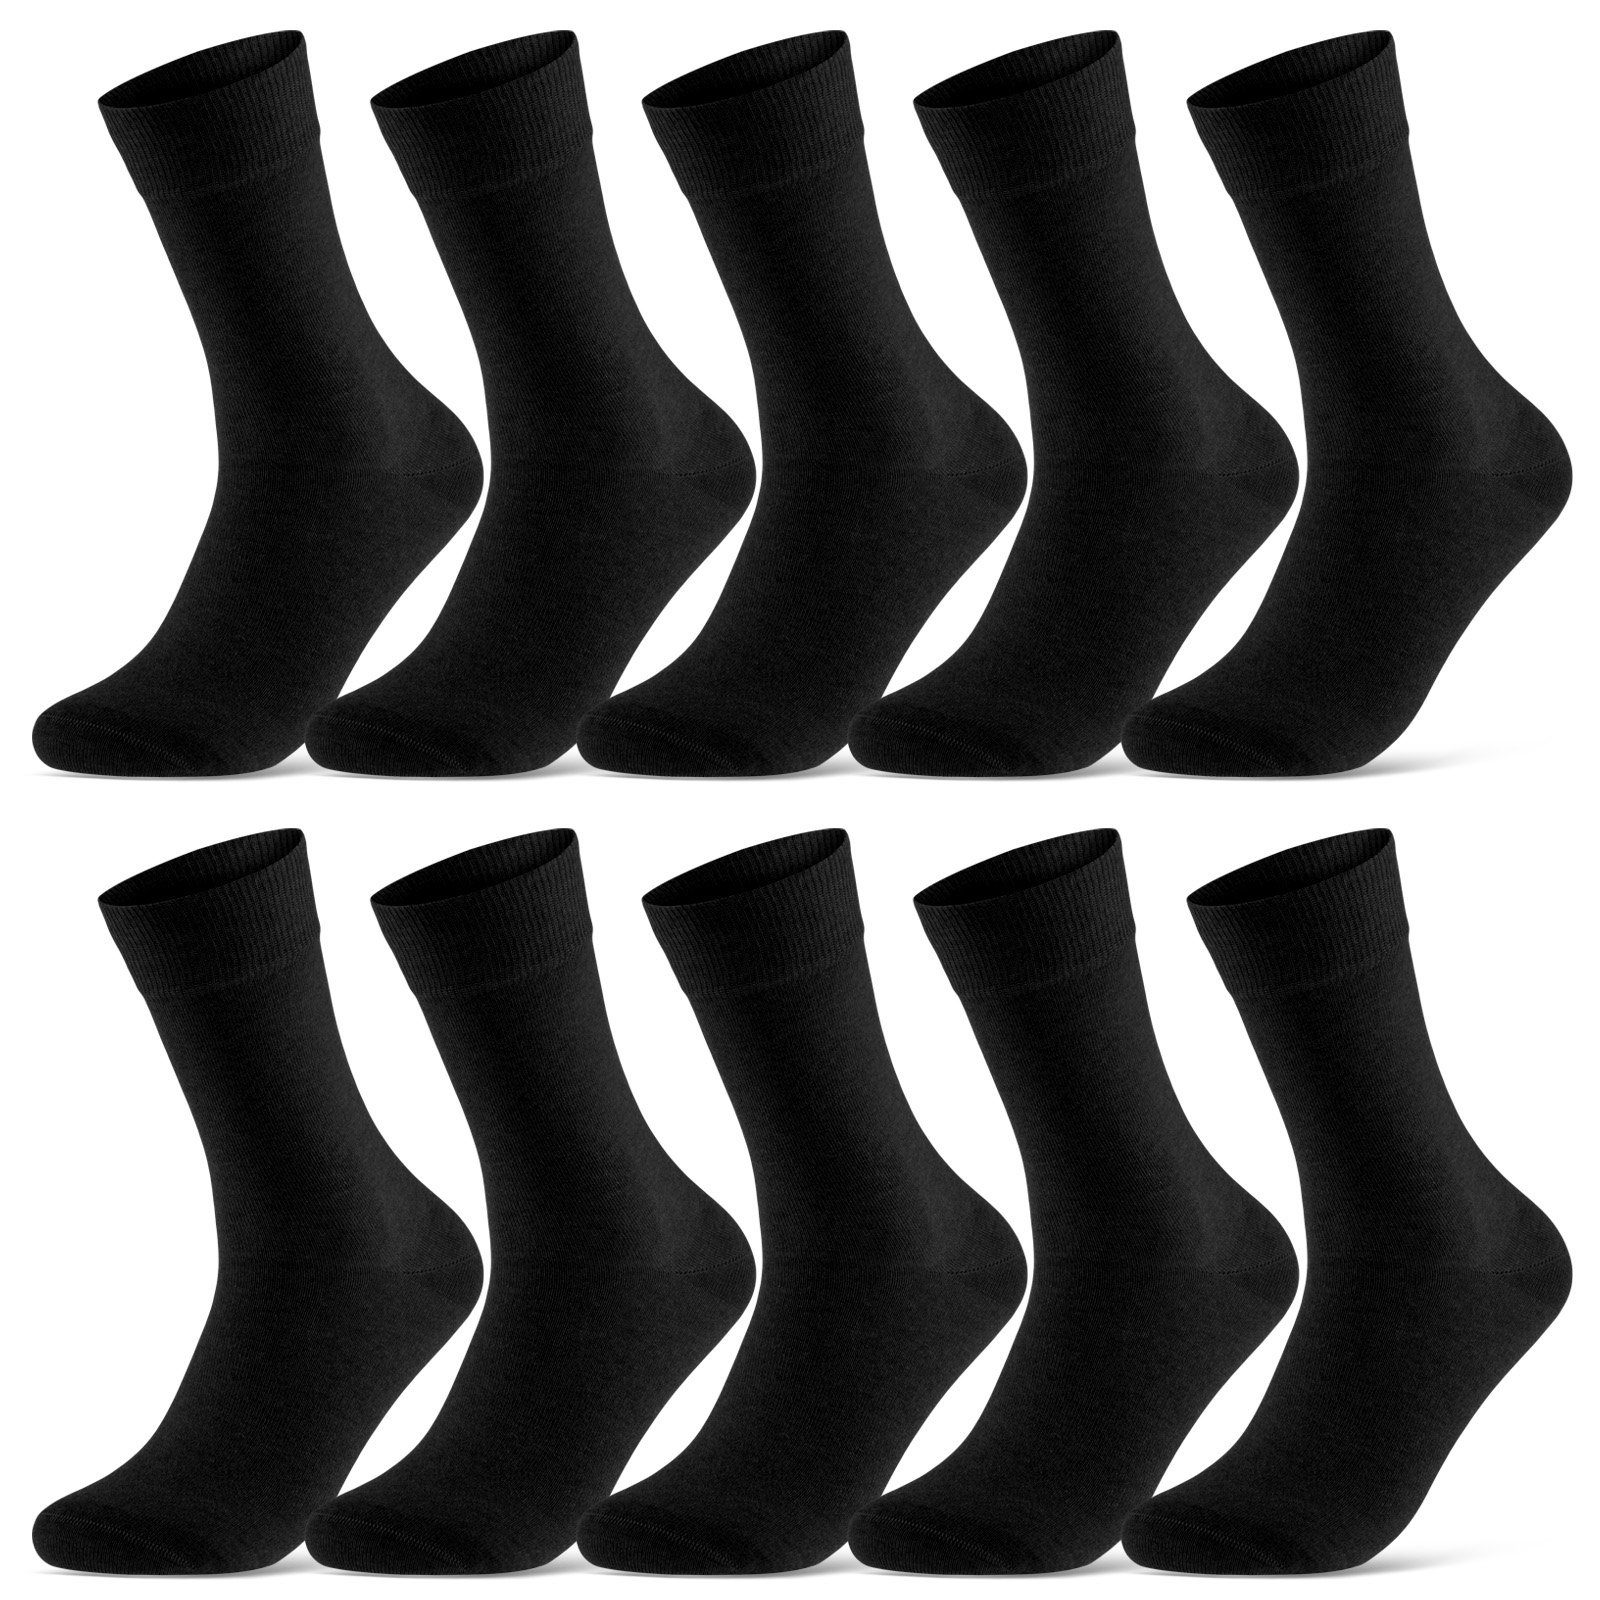 sockenkauf24 Socken 10 Paar Damen & Herren Socken Business Socken Baumwolle (Schwarz, 39-42) mit Komfortbund (Basicline) - 70201T WP